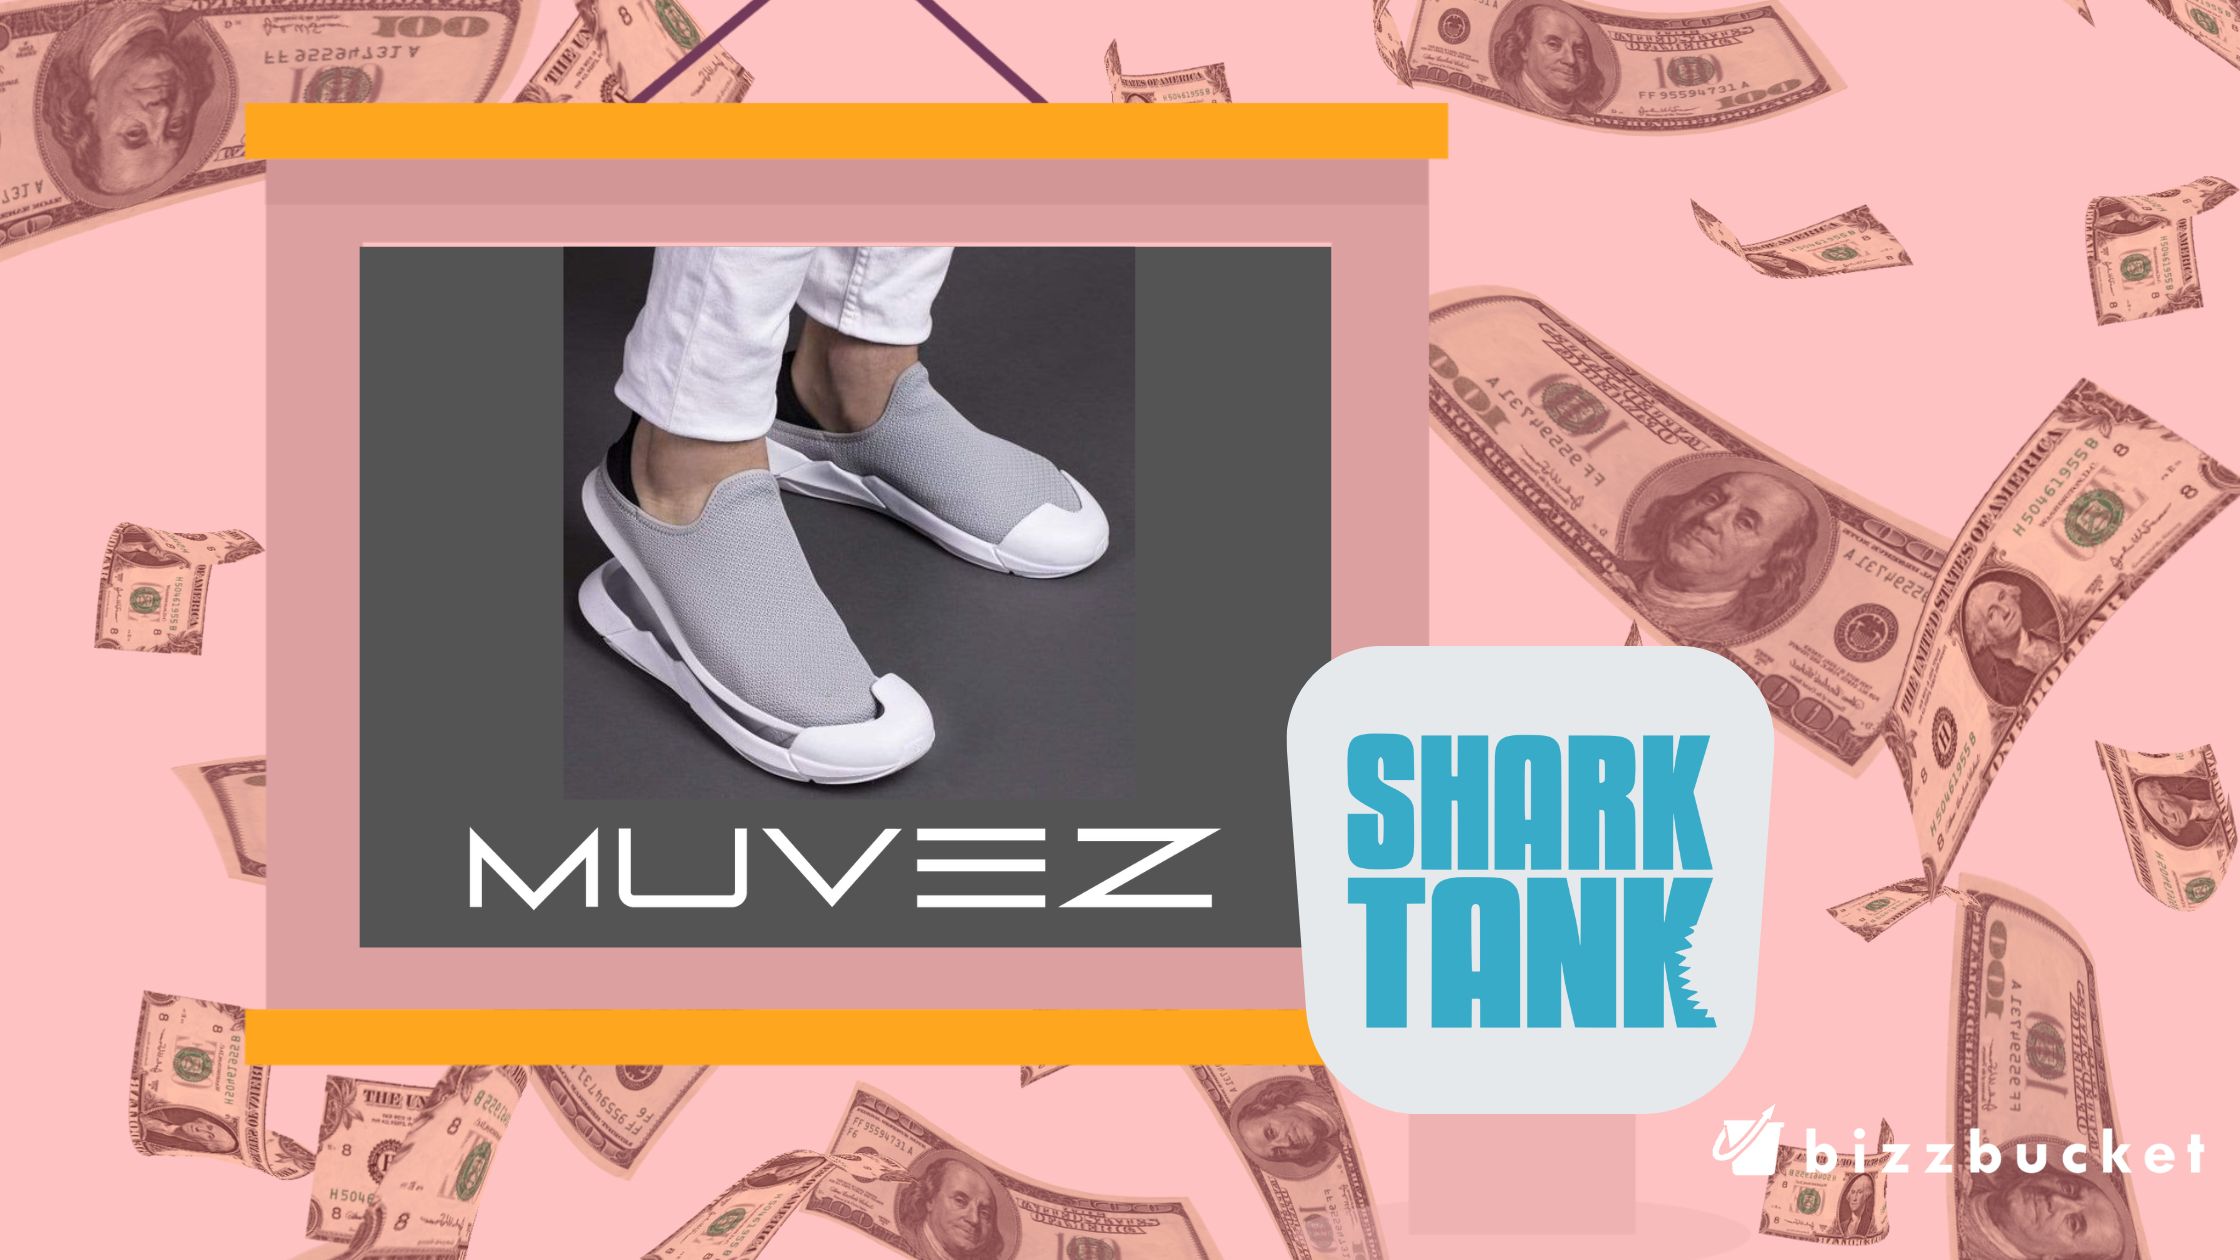 Muvez shark tank update